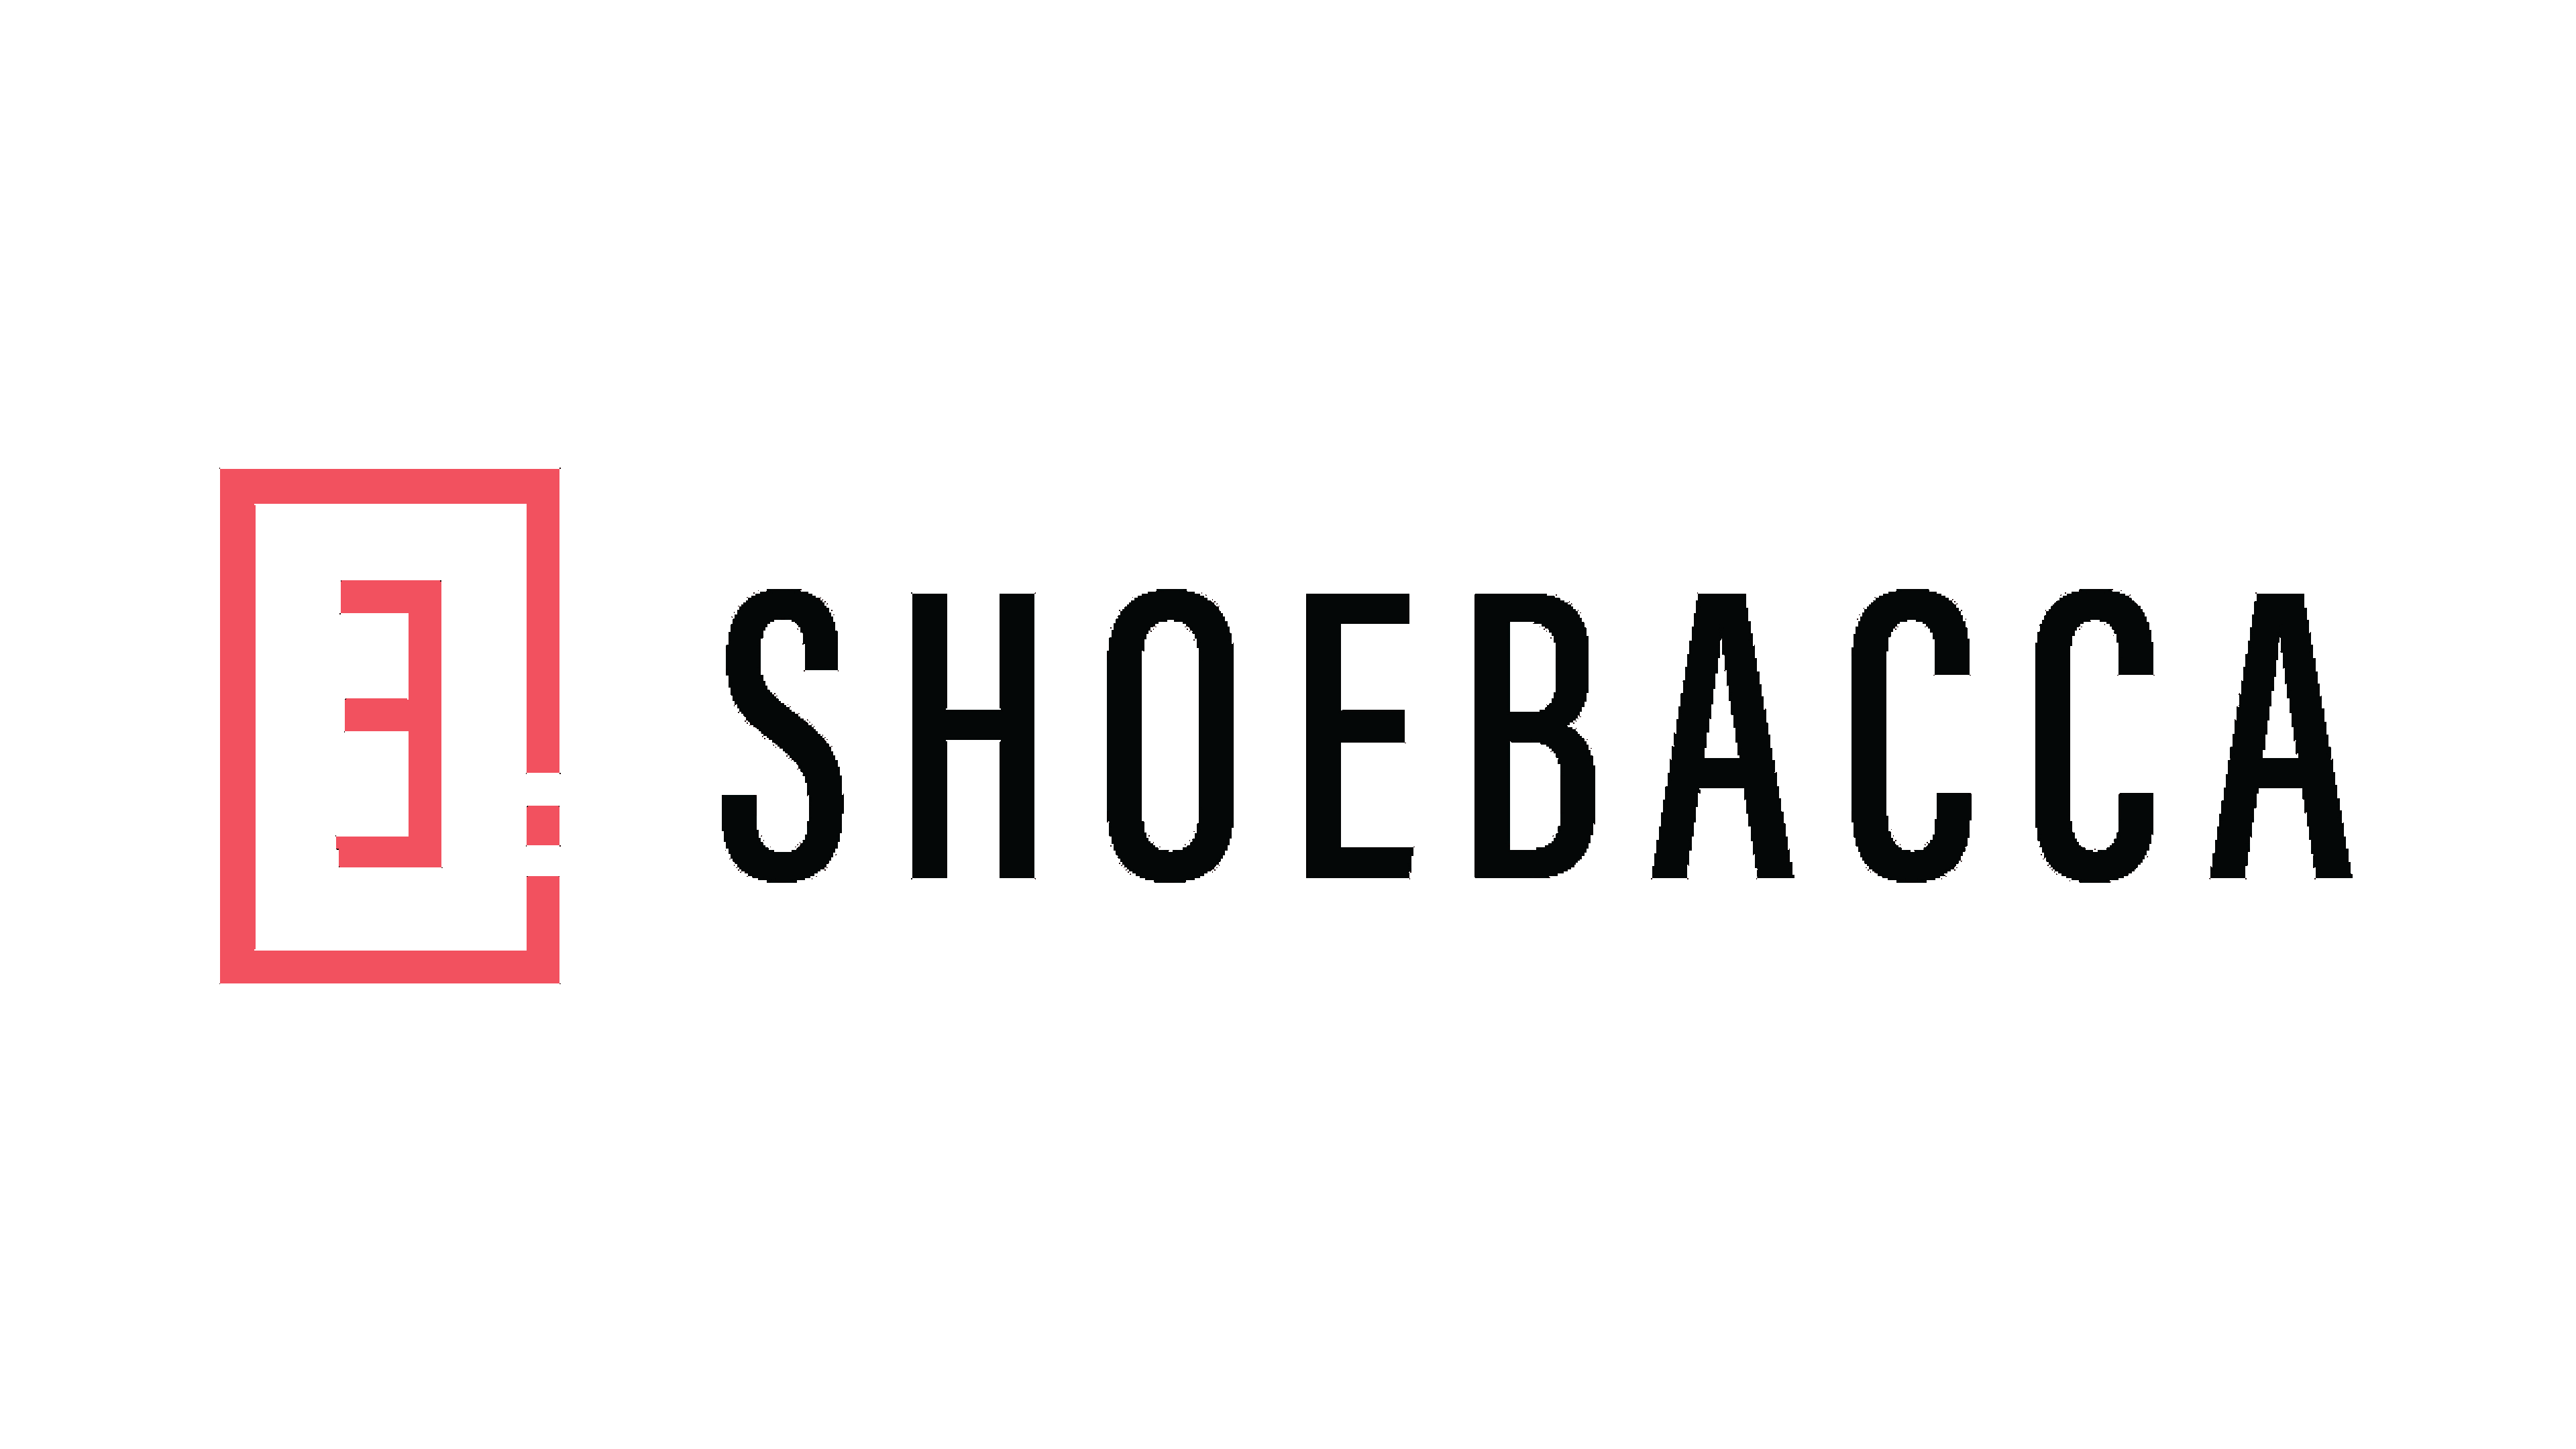 Shoebacca United States